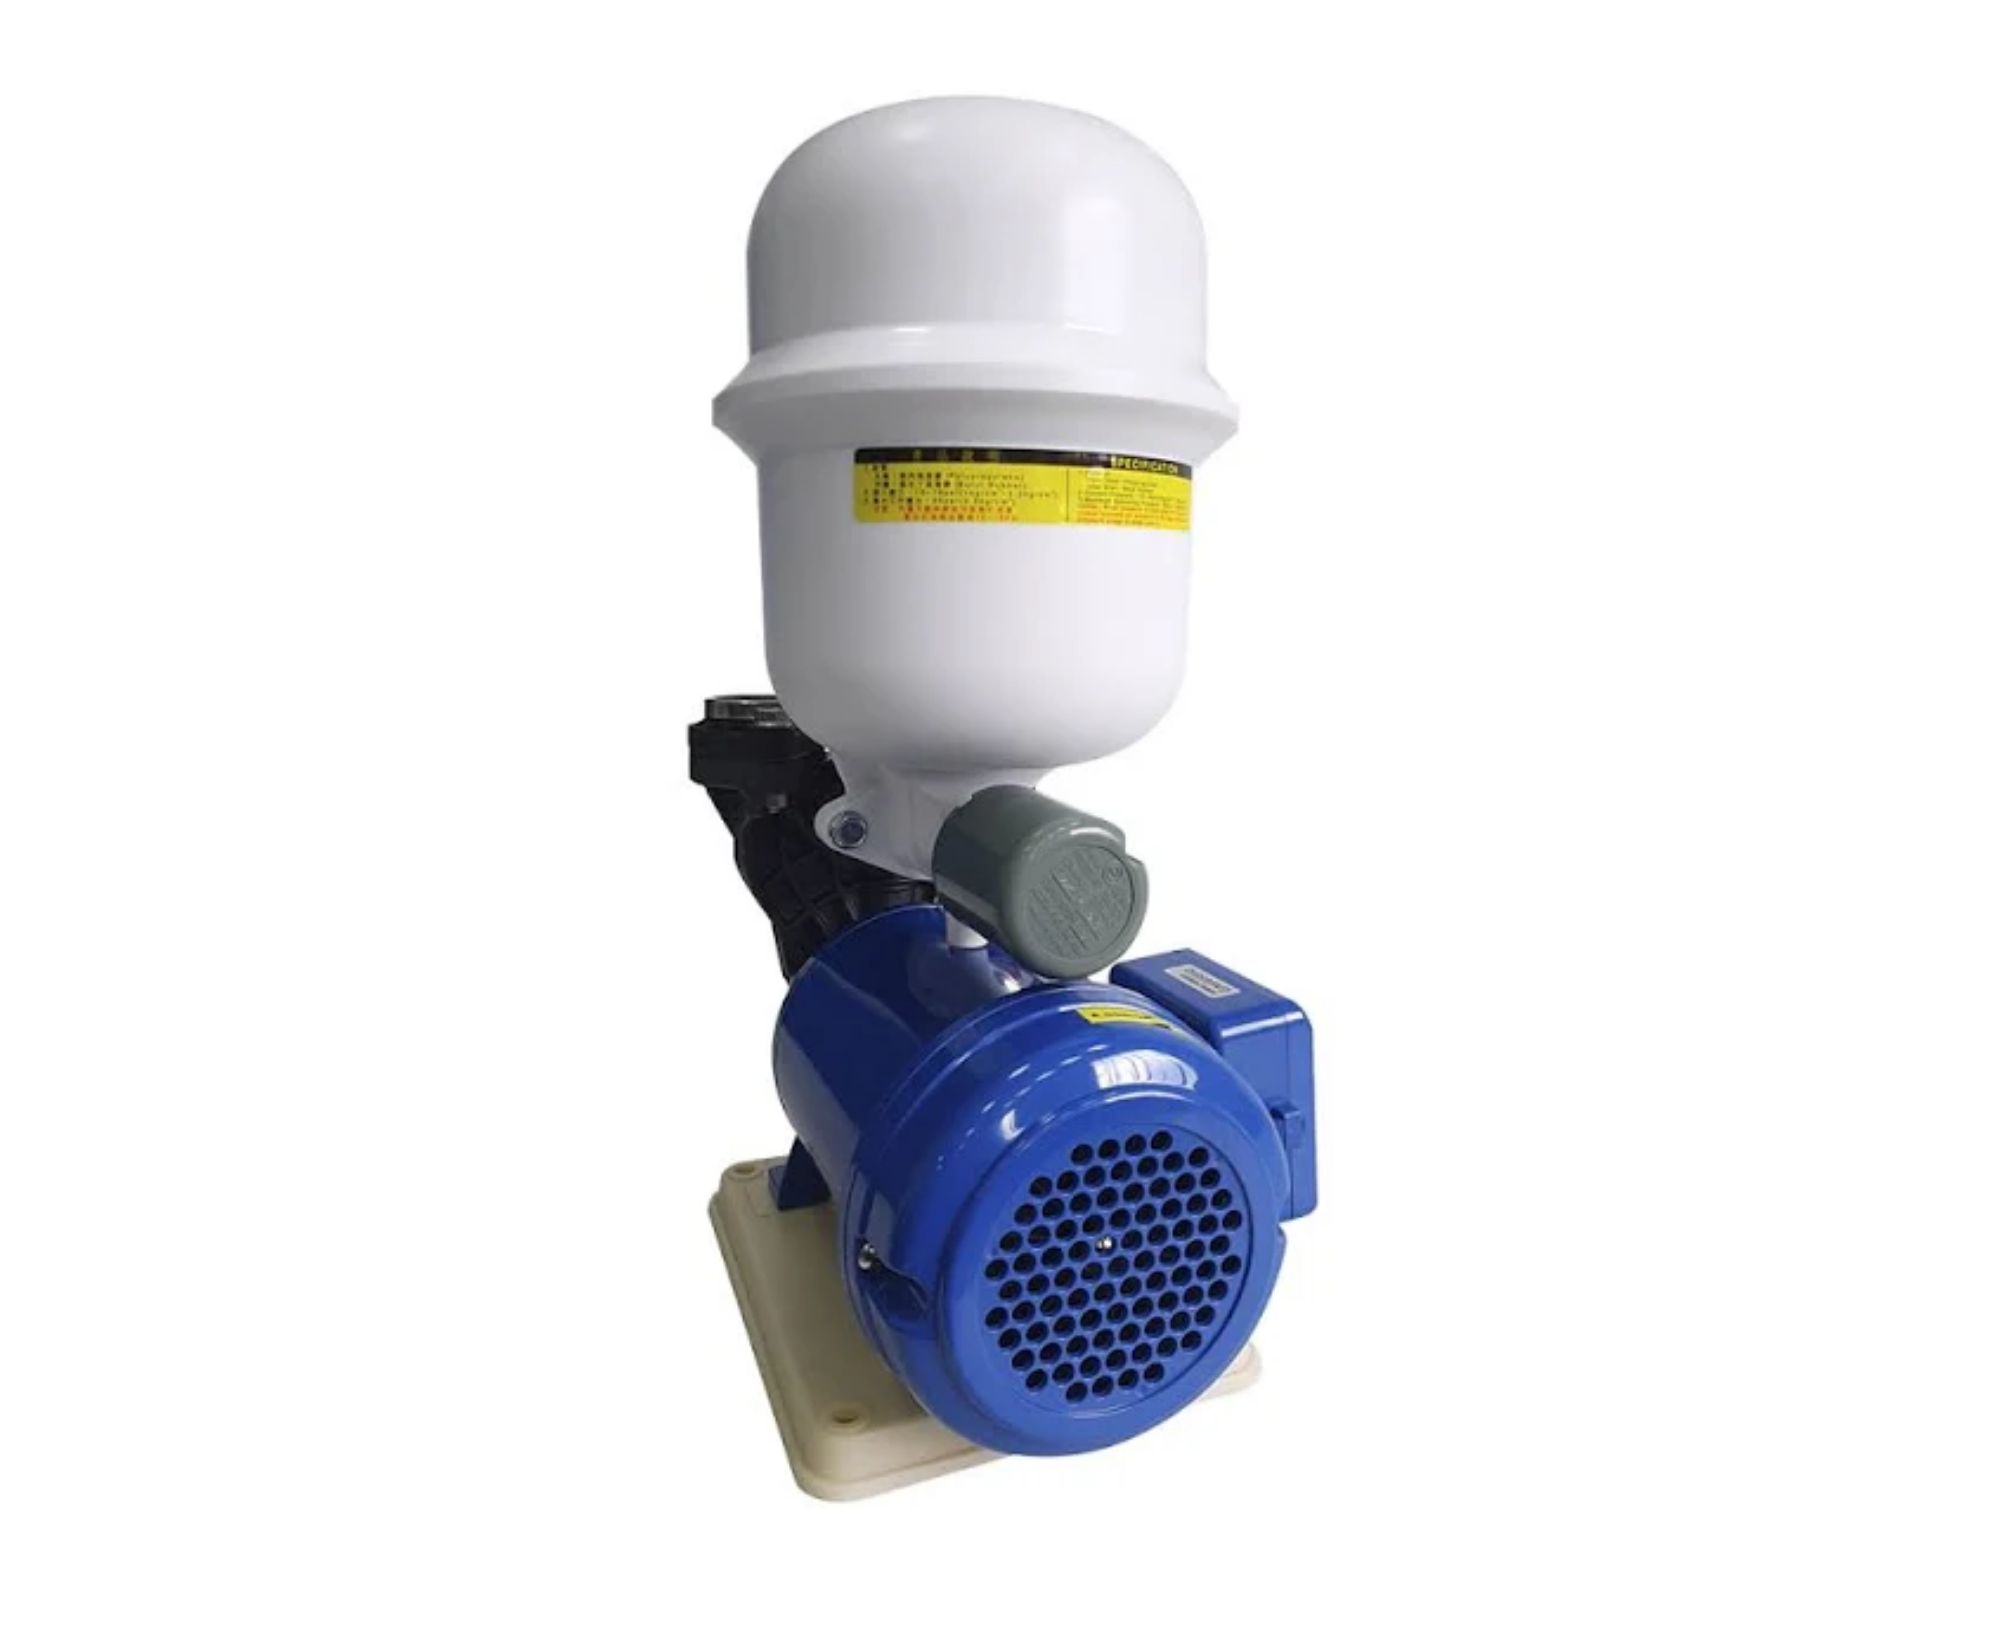 Pressurizador de Água Inova -gp 280 Ps -bivolt - Termoplástica de Alta Performance - com Pressostato - 3